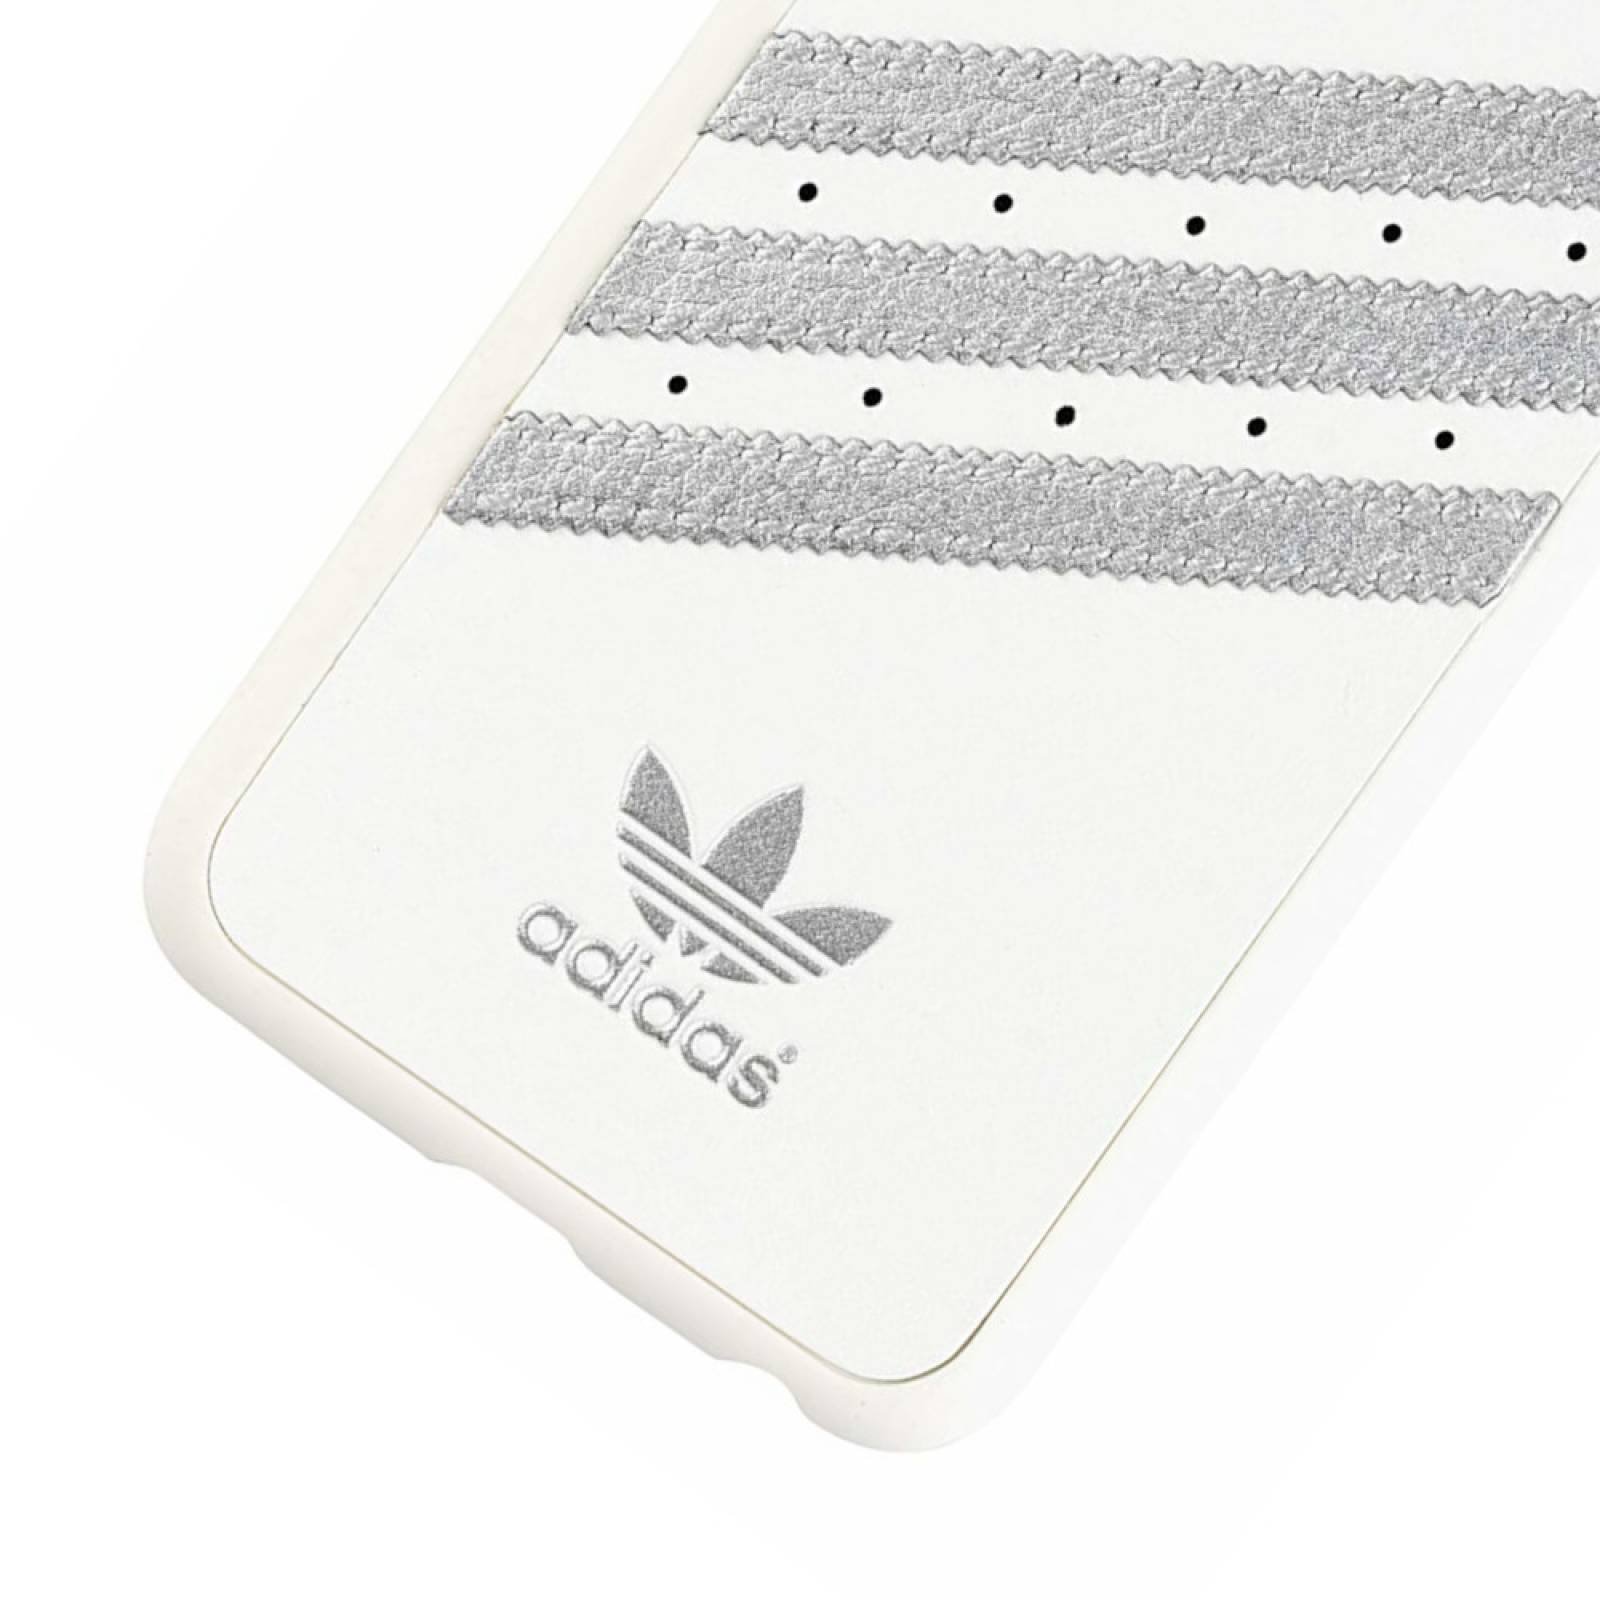 Funda Stripes Adidas Originals iPhone 6s, 6 Blanco y Plata